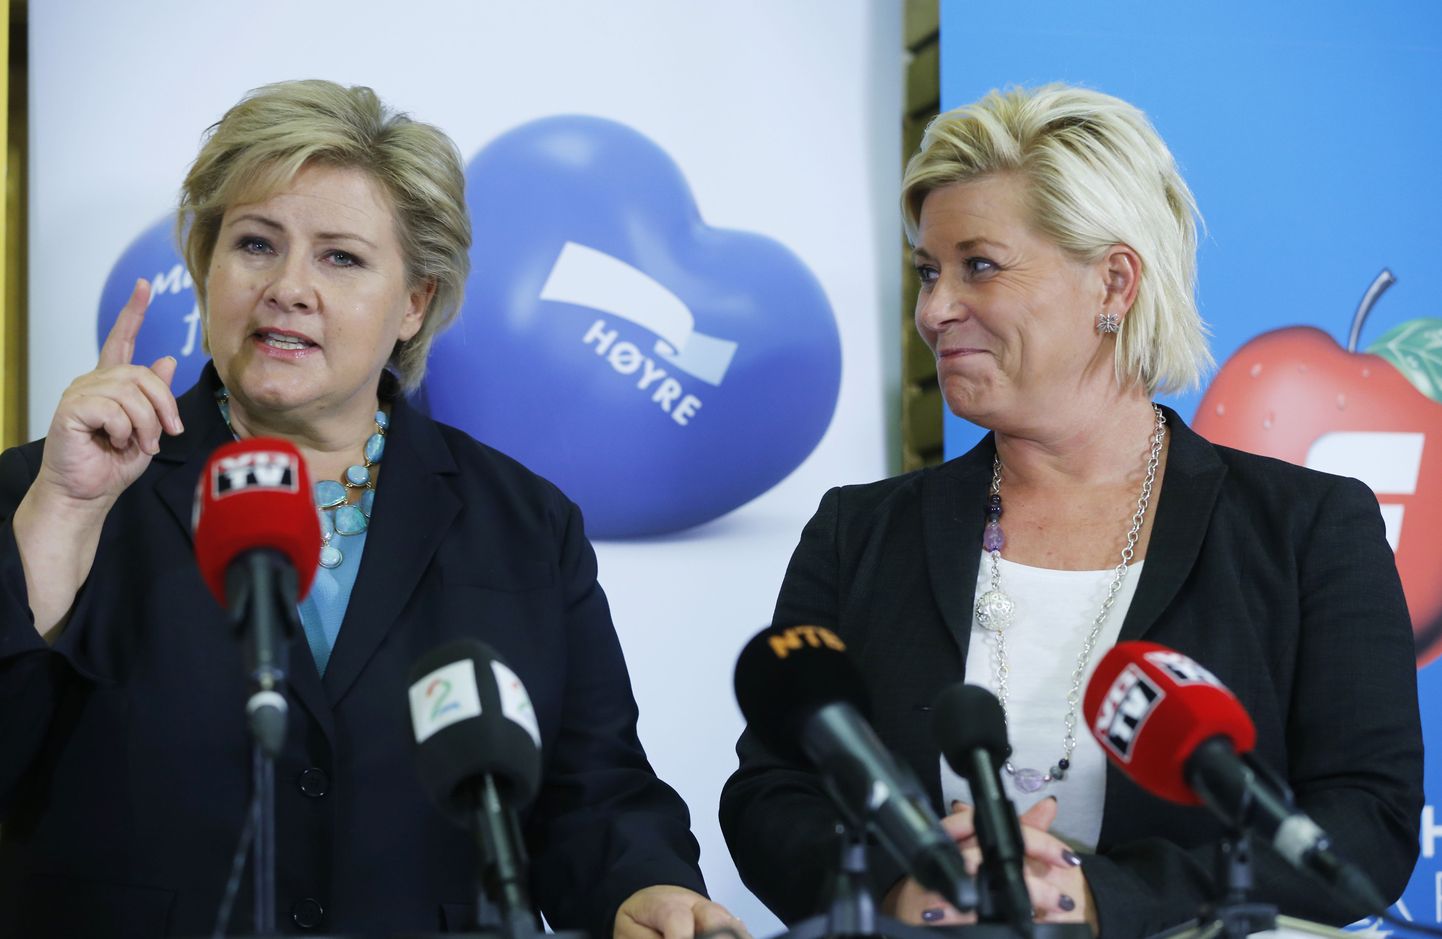 Norra liidrite arvates riigil probleeme jätkub, aga paanikaks pole põhjust. Vasakul peaminister Erna Solberg, paremal rahandusminister Siv Jensen.